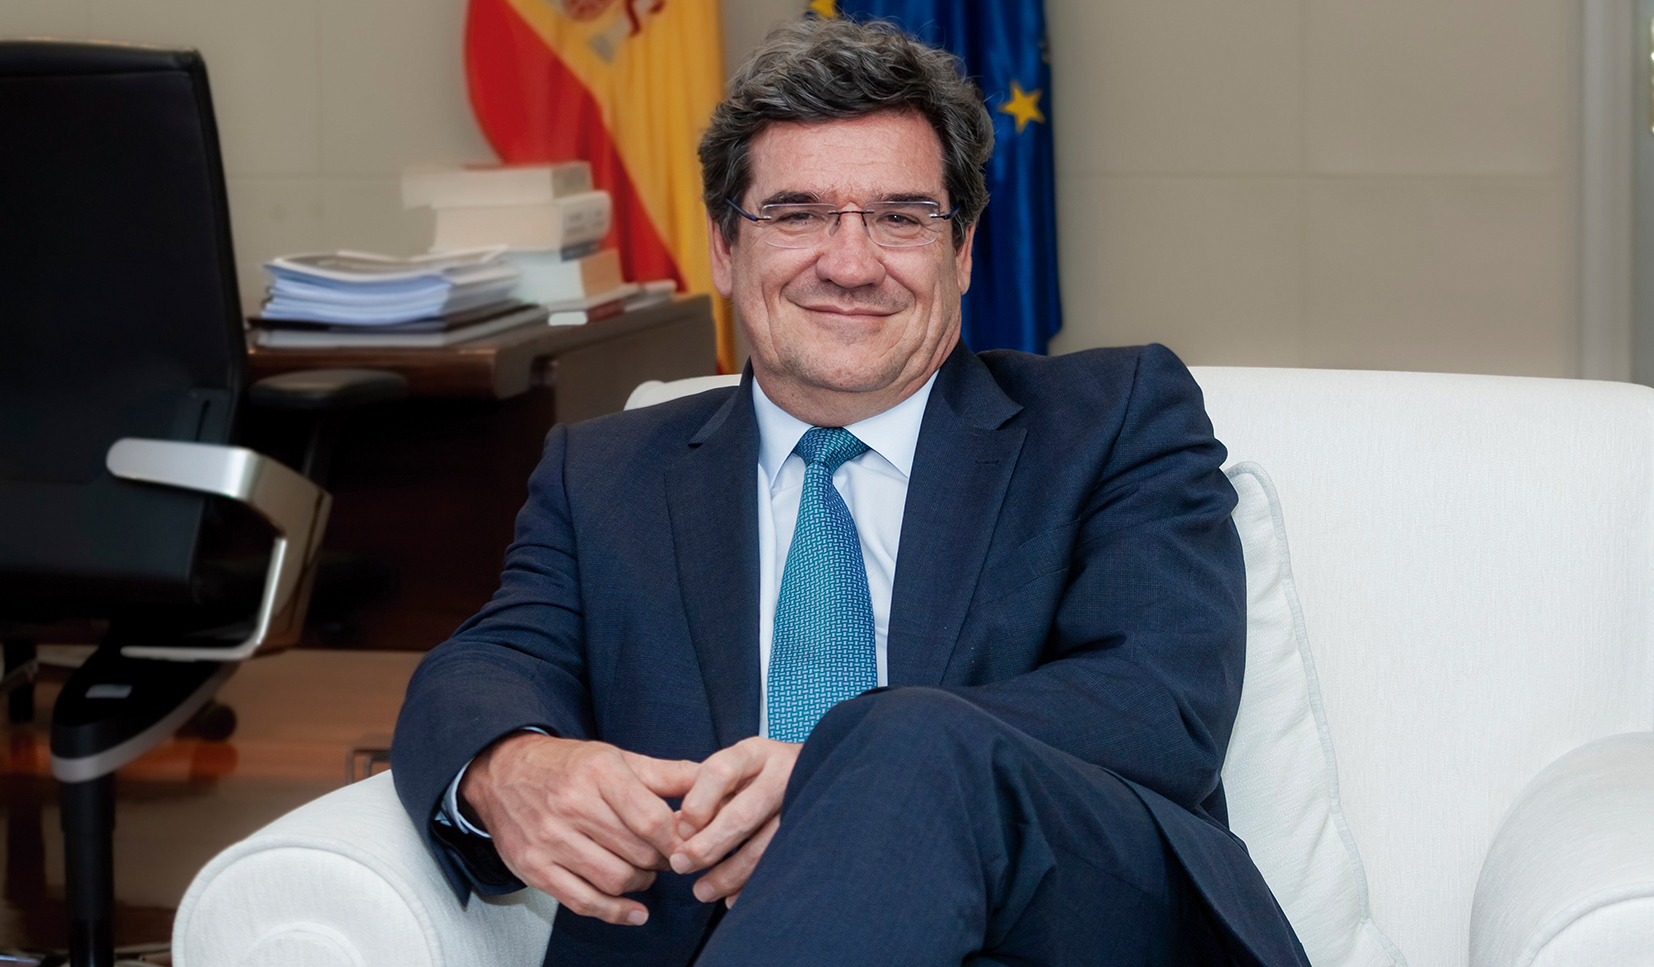 José Luis Escrivá Belmonte Ministro de Inclusión, Seguridad Social y Migraciones